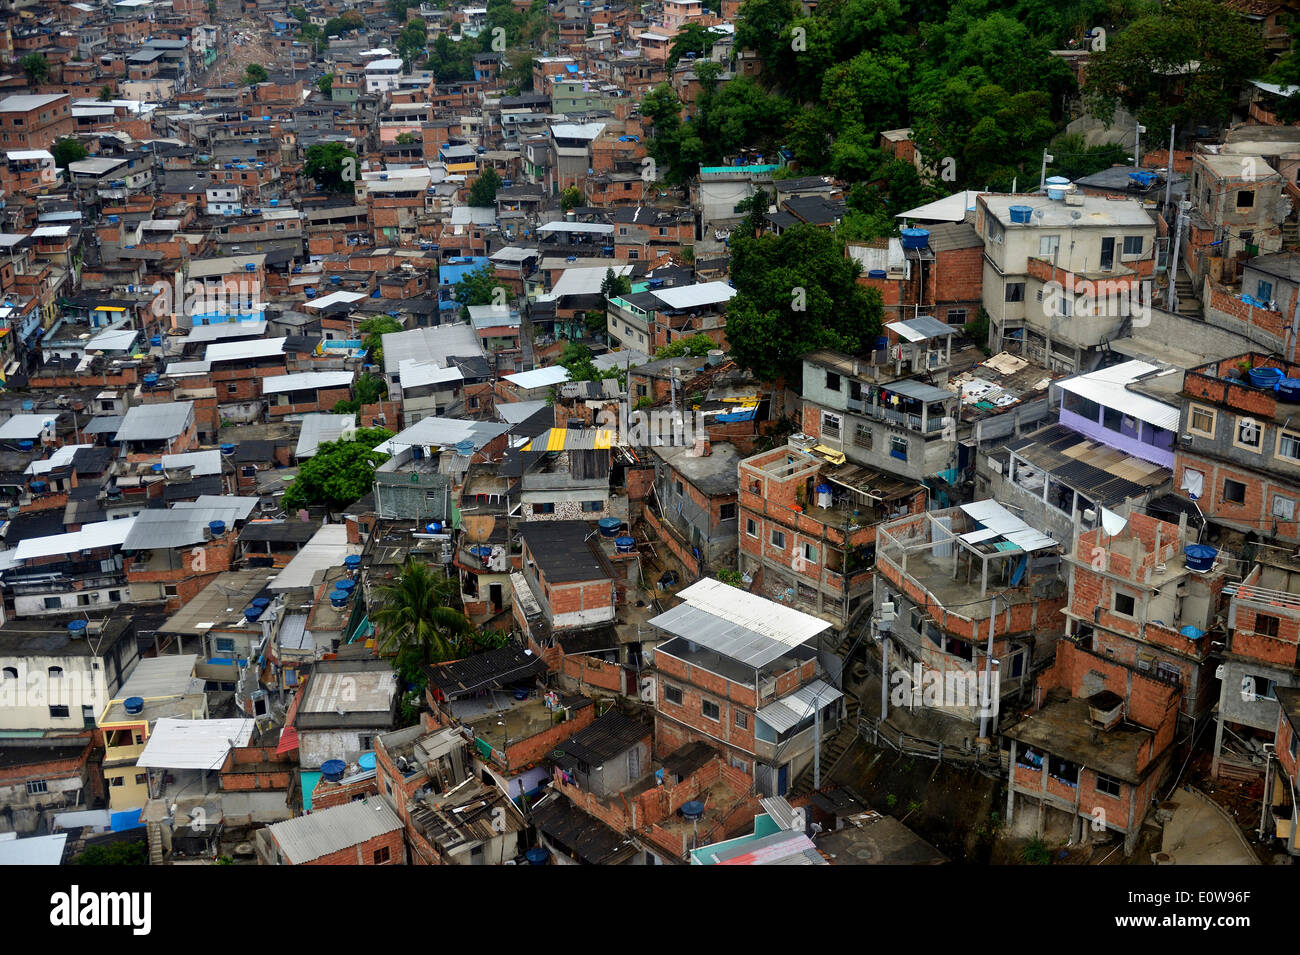 Complexo do Alemao favela, Rio de Janeiro, Brazil Stock Photo